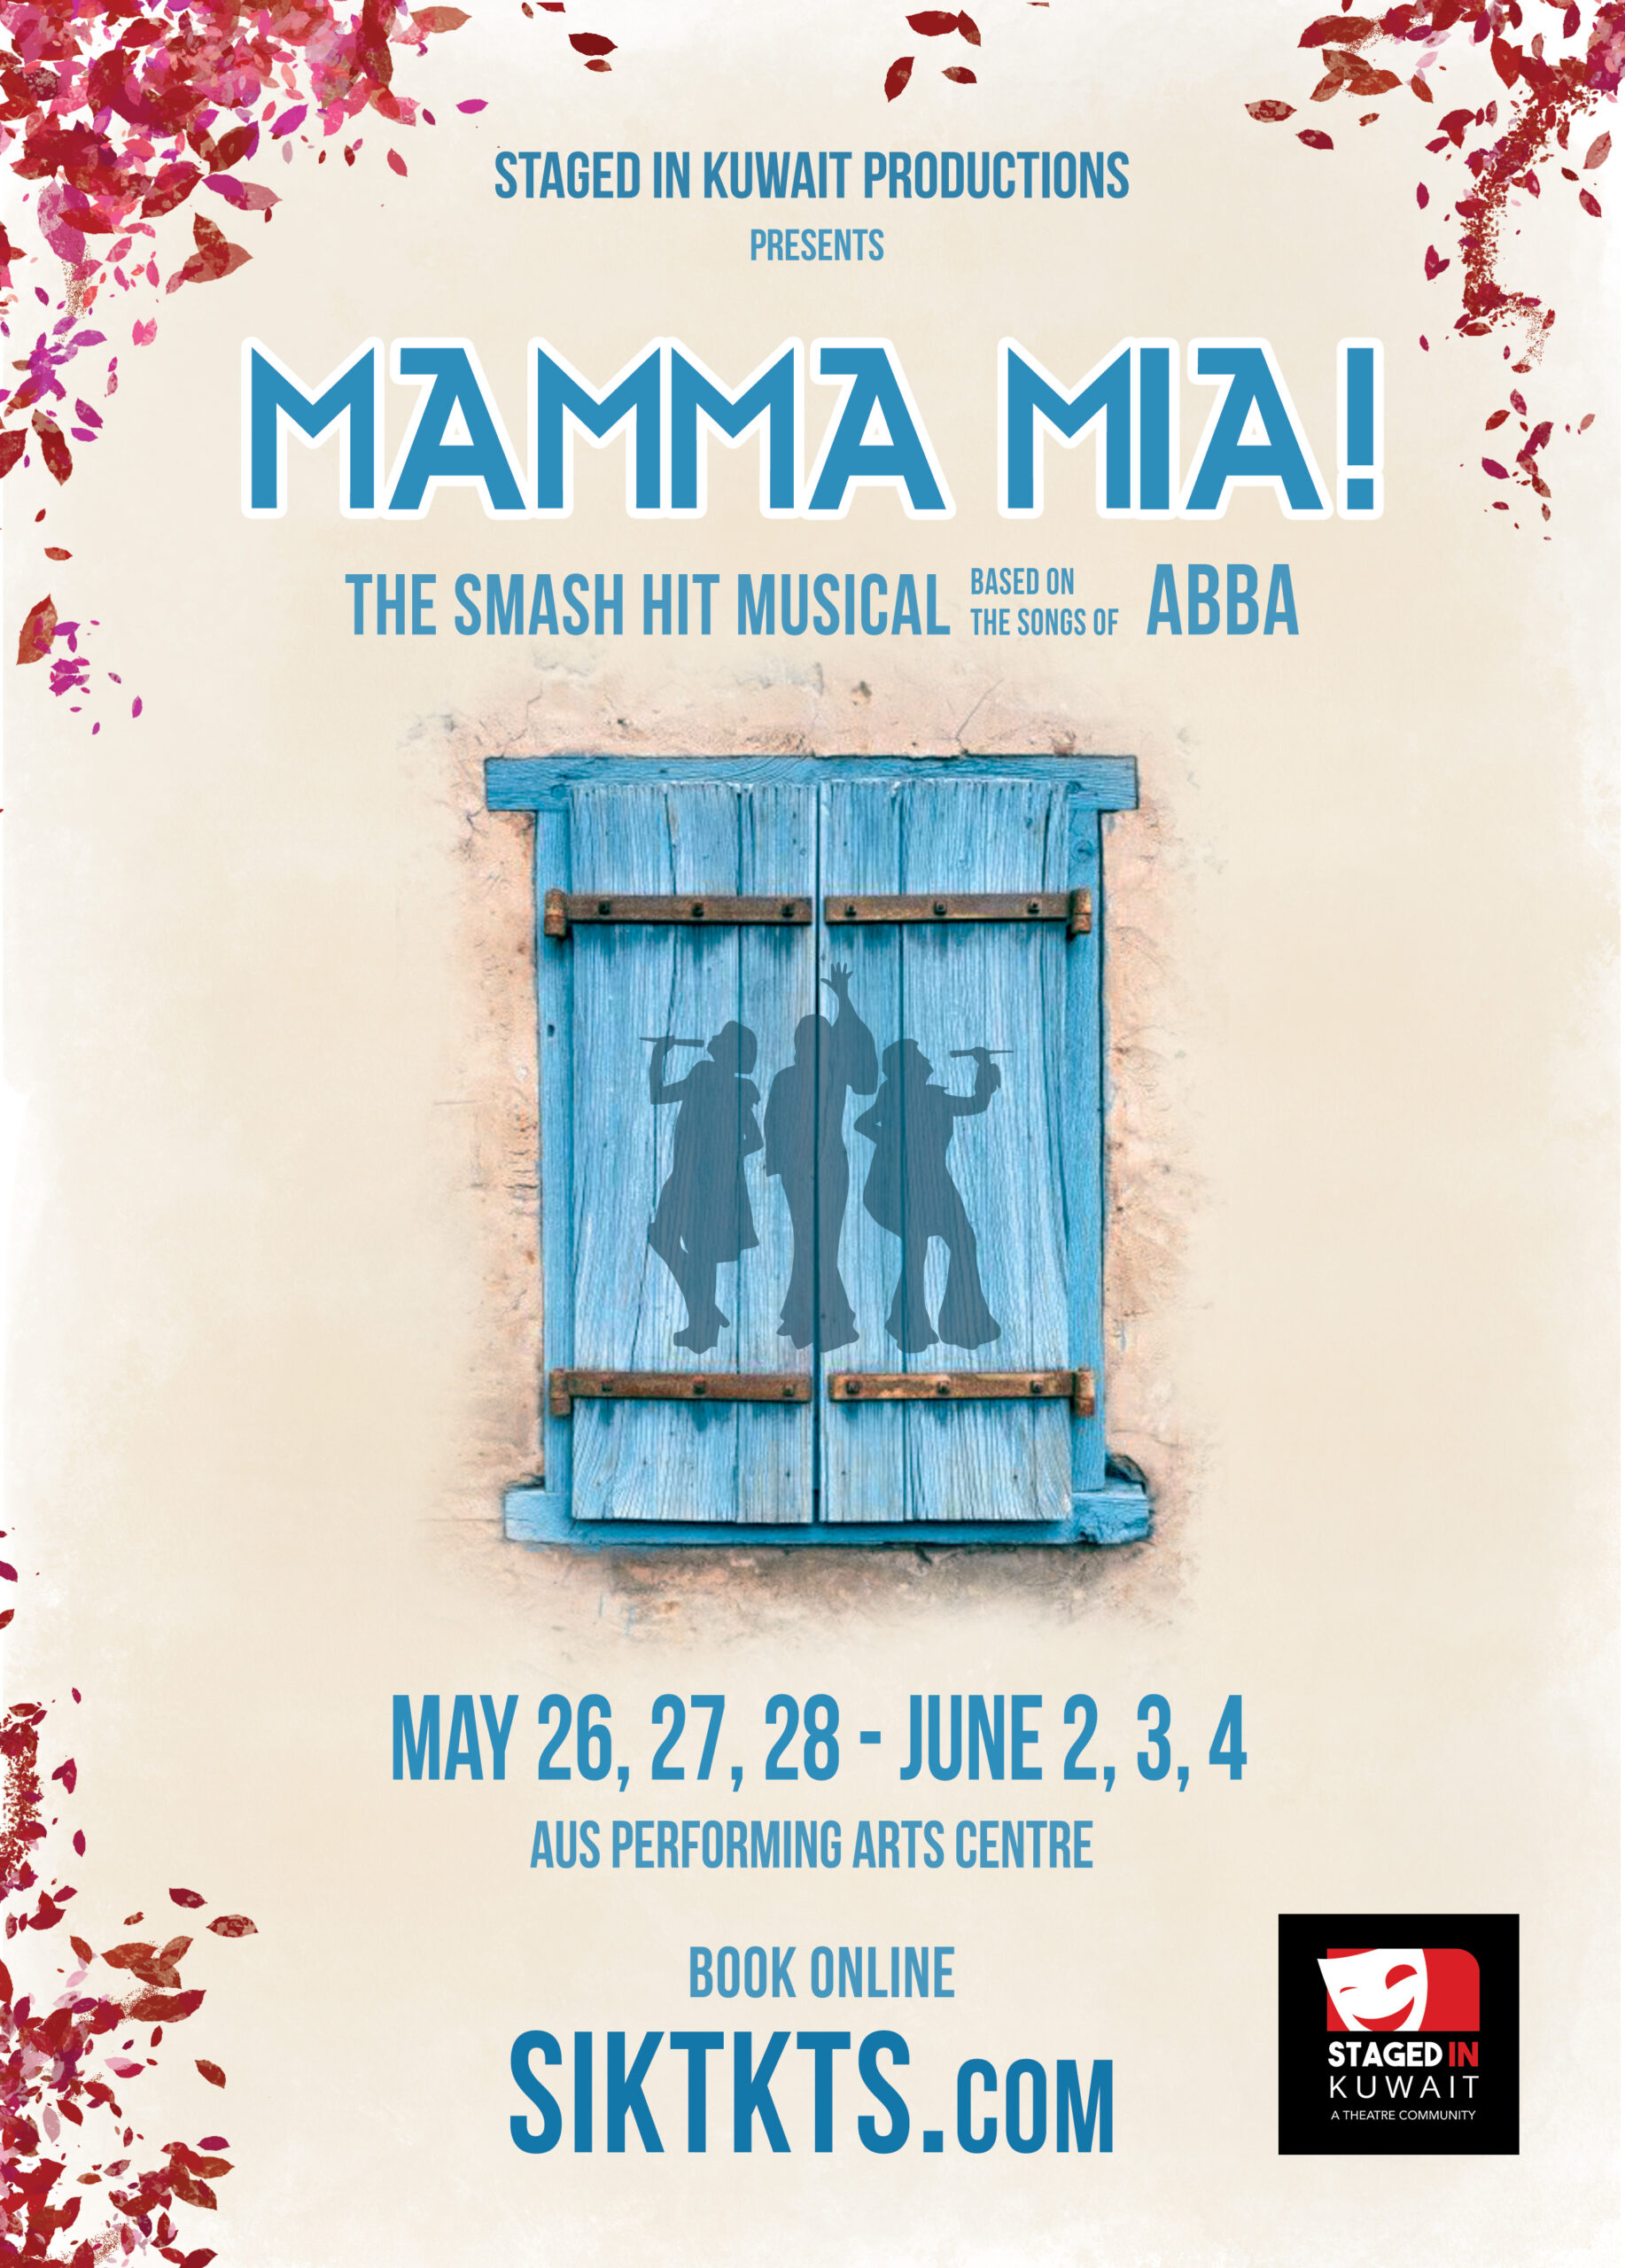 Mamma Mia Poster